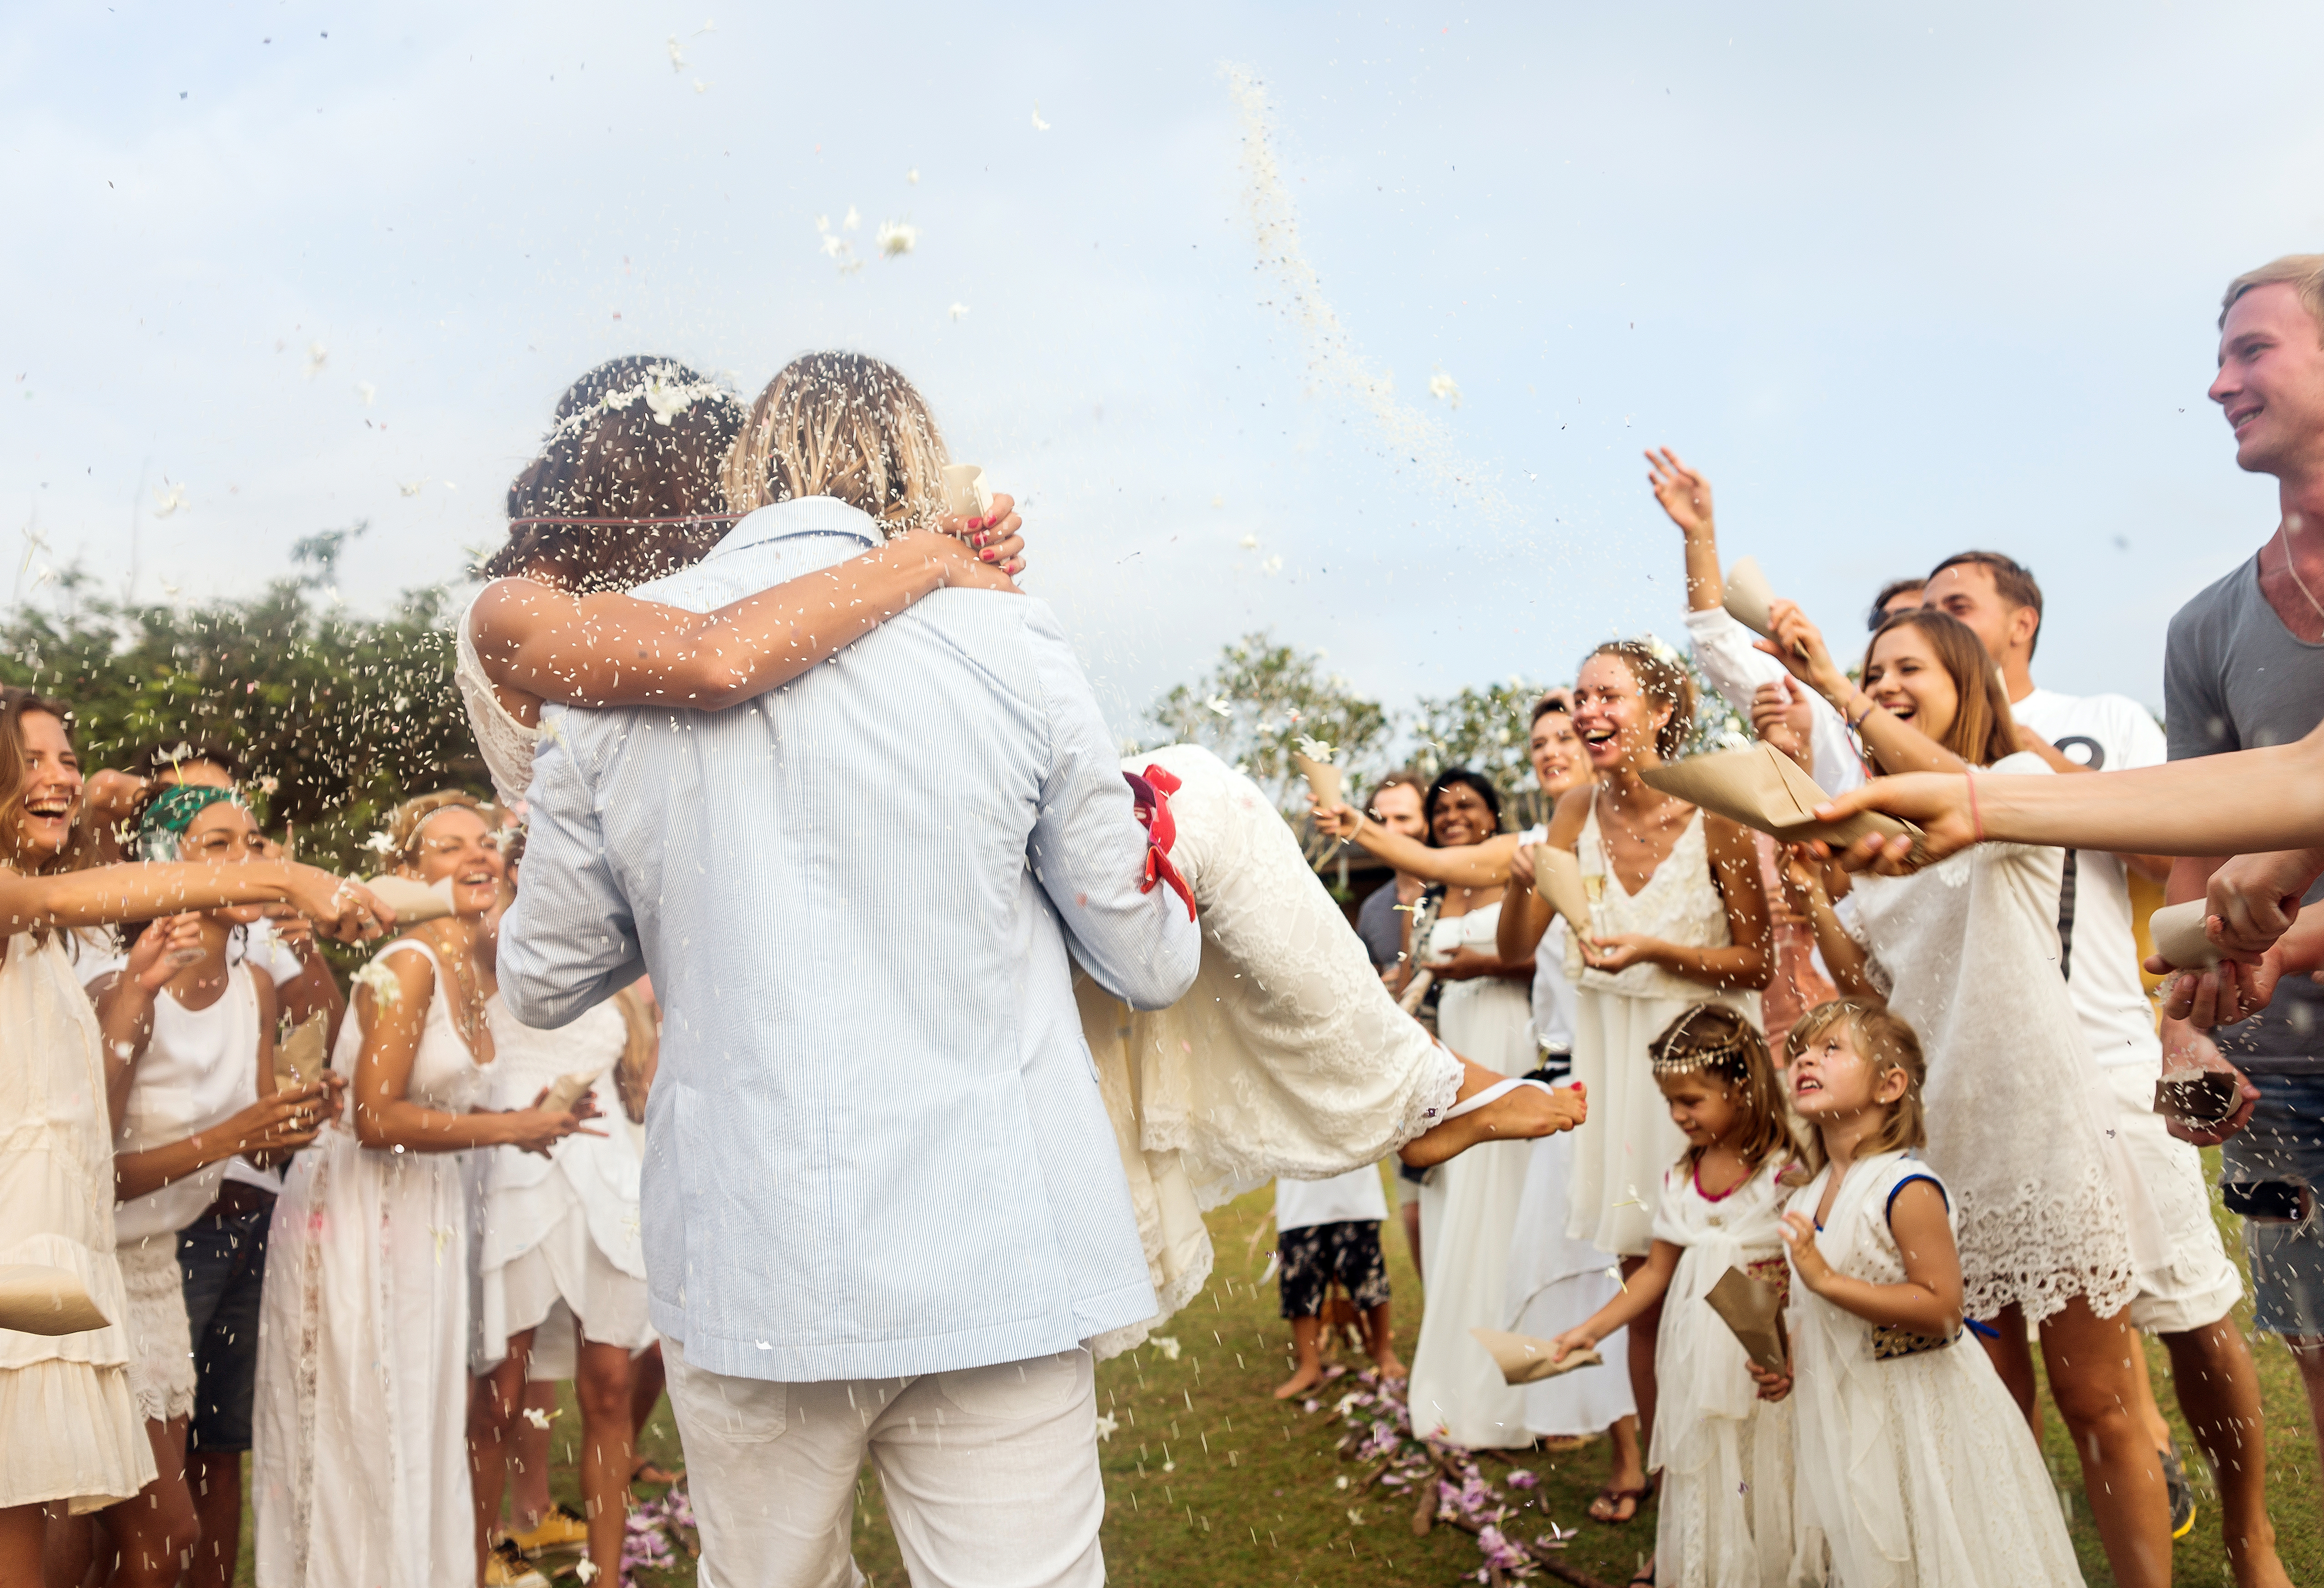 Un marié porte une mariée lors du mariage | Source : Shutterstock